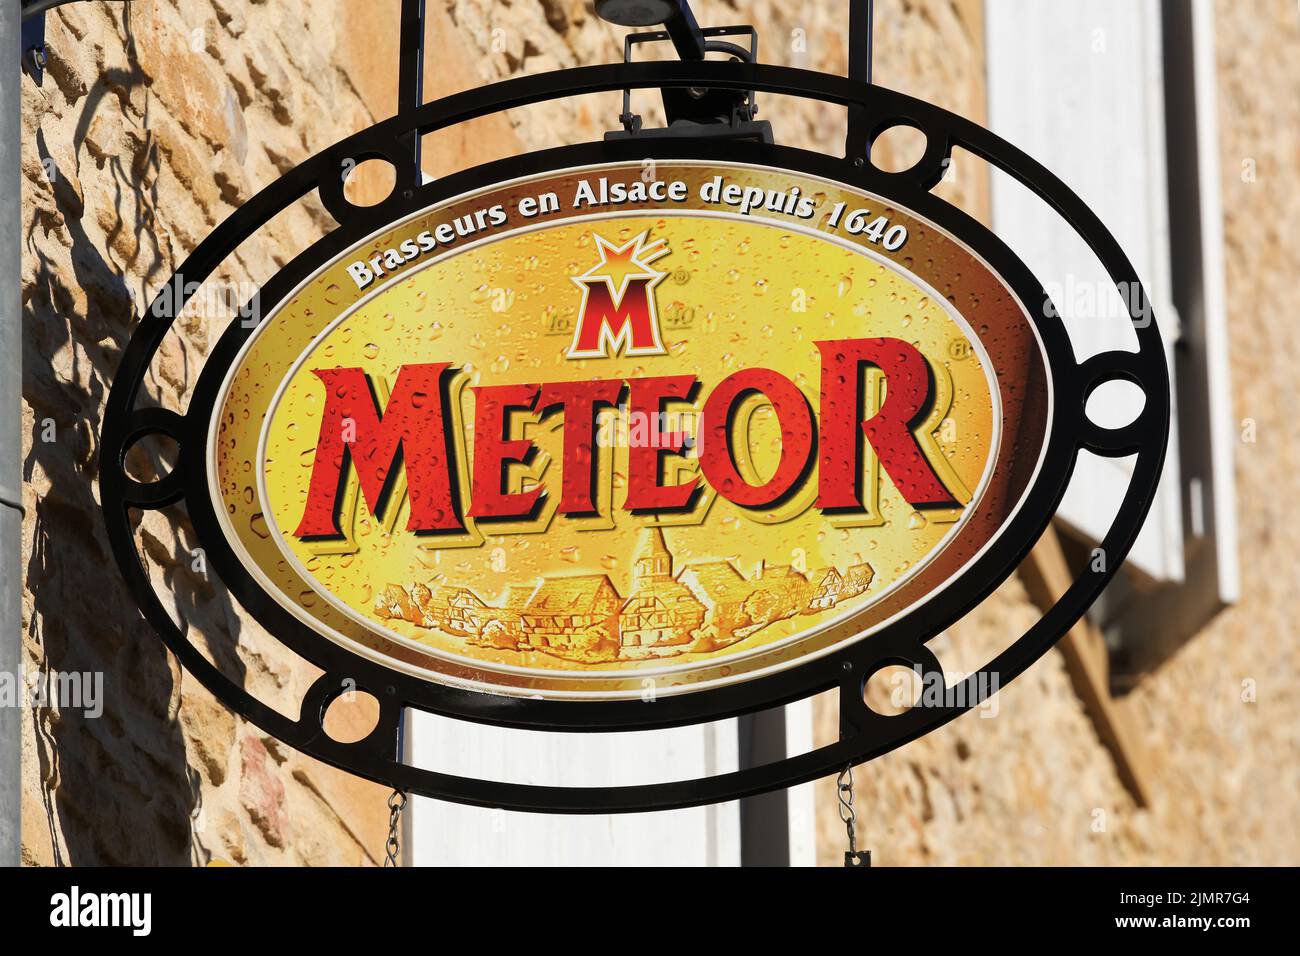 Gleize, Francia - 19 de enero de 2021: Meteor es una cervecería independiente de Alsacia fundada en 1640. Se encuentra en Hochfelden, en el Bajo Rin, Francia Foto de stock